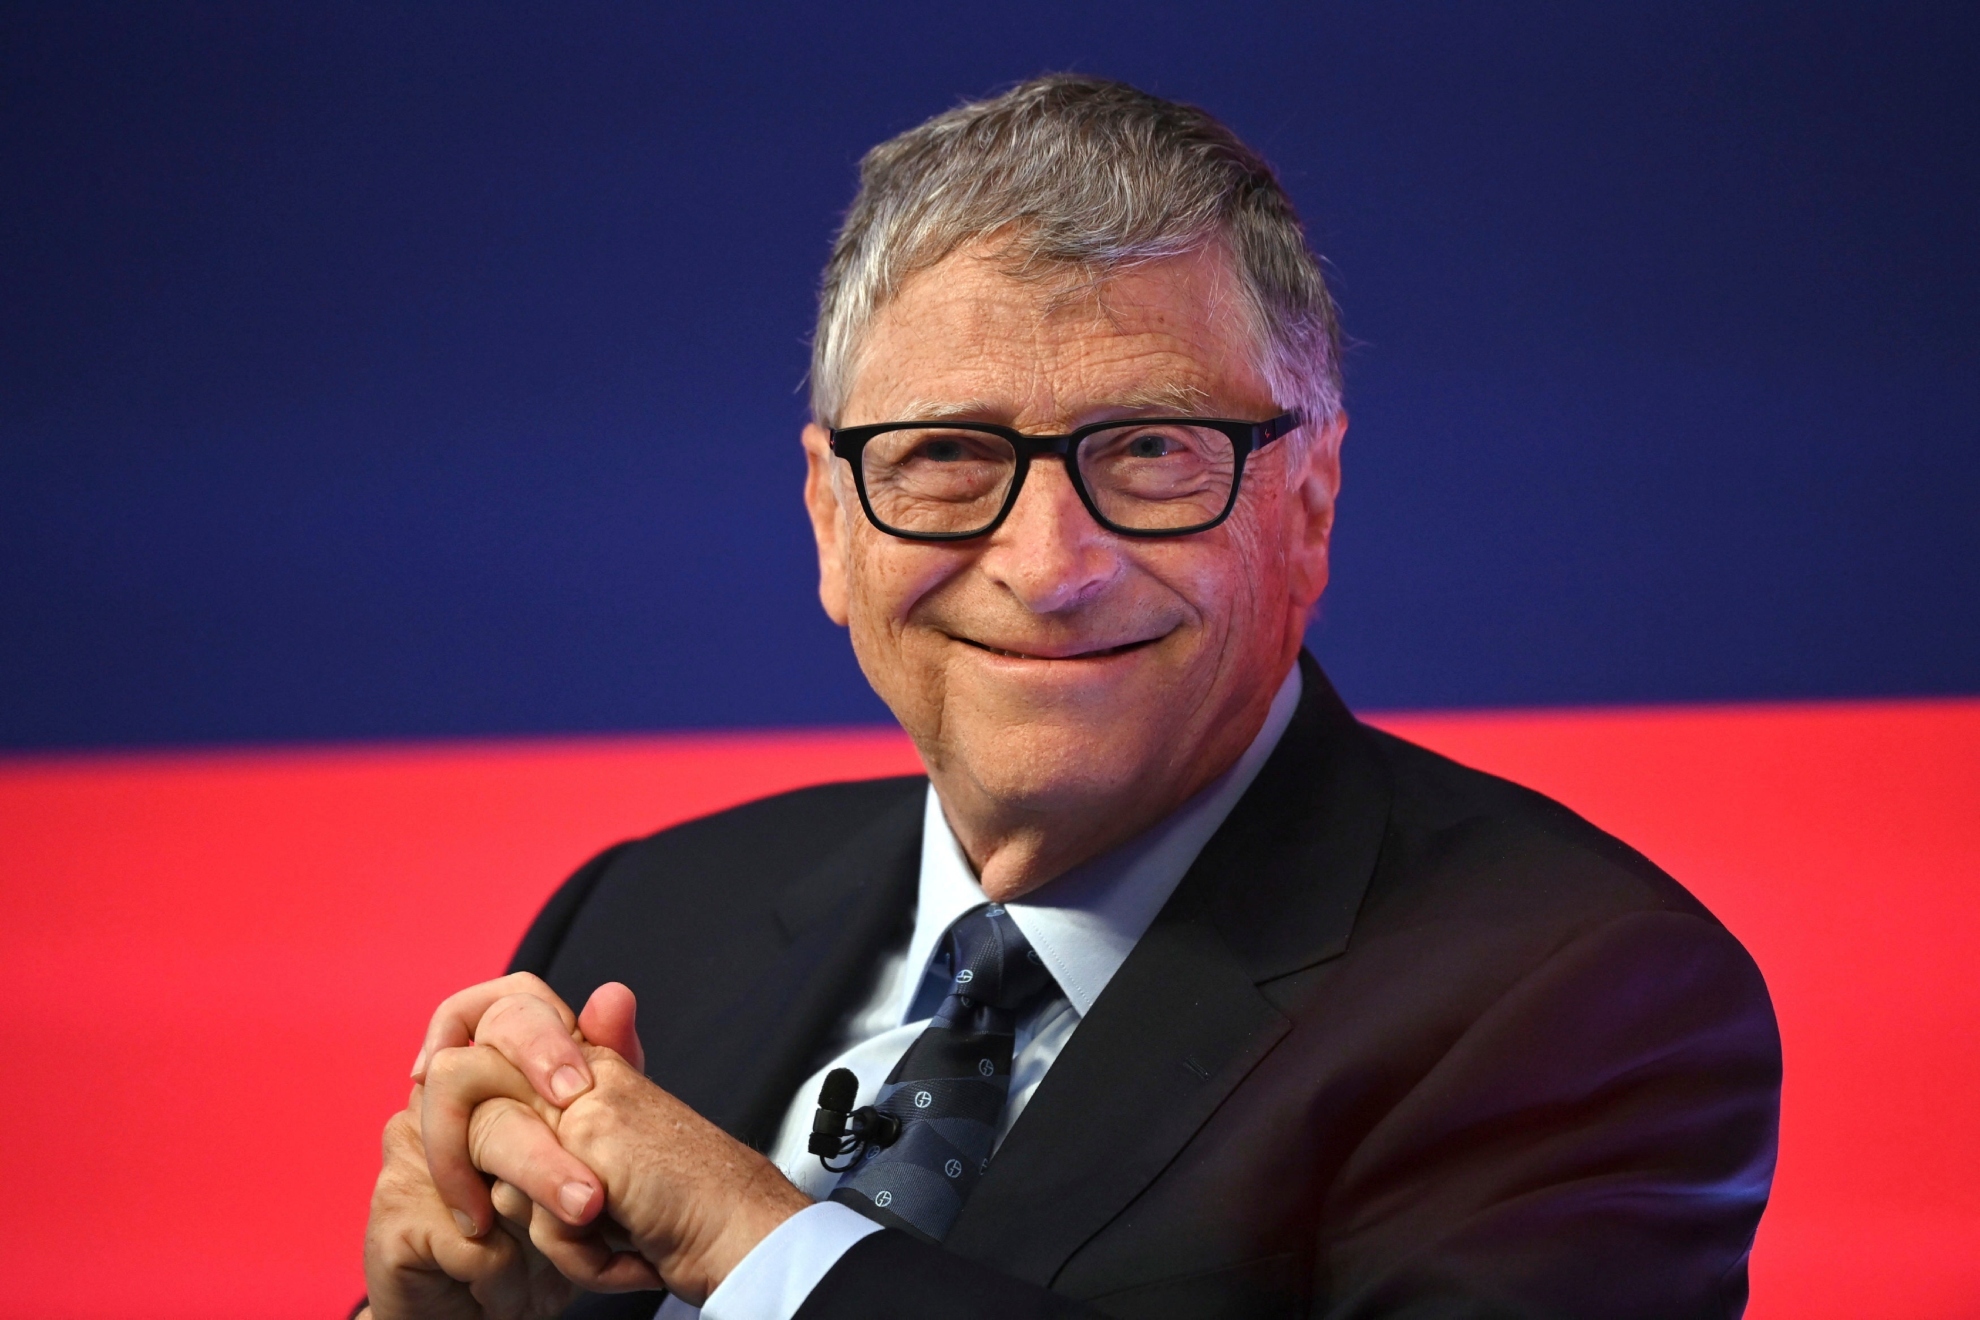 Bill Gates propaga mosquitos contagiados con una bactera de su propia granja